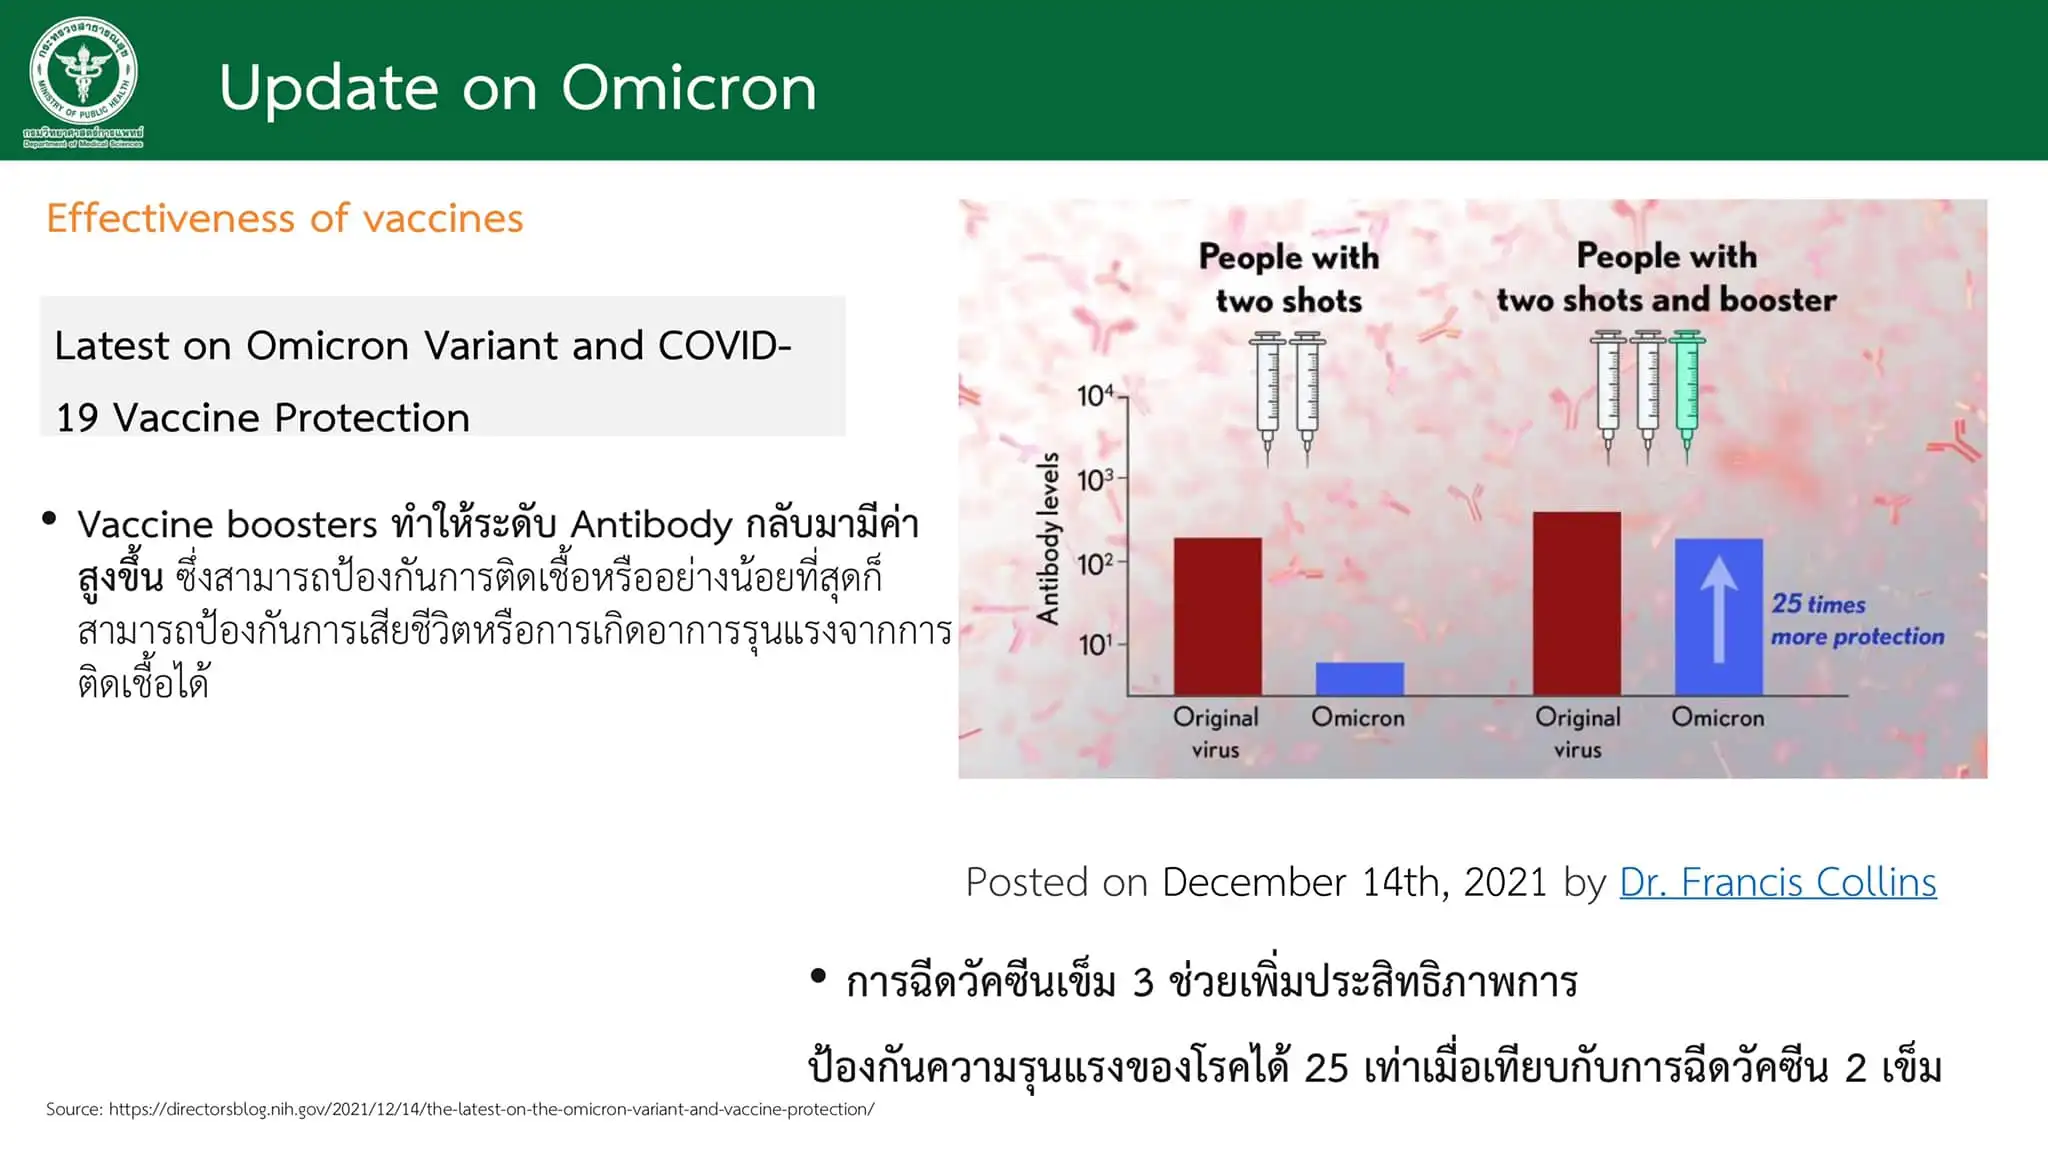 โอมิครอนในไทย ล่าสุด 205 ราย  HealthServ